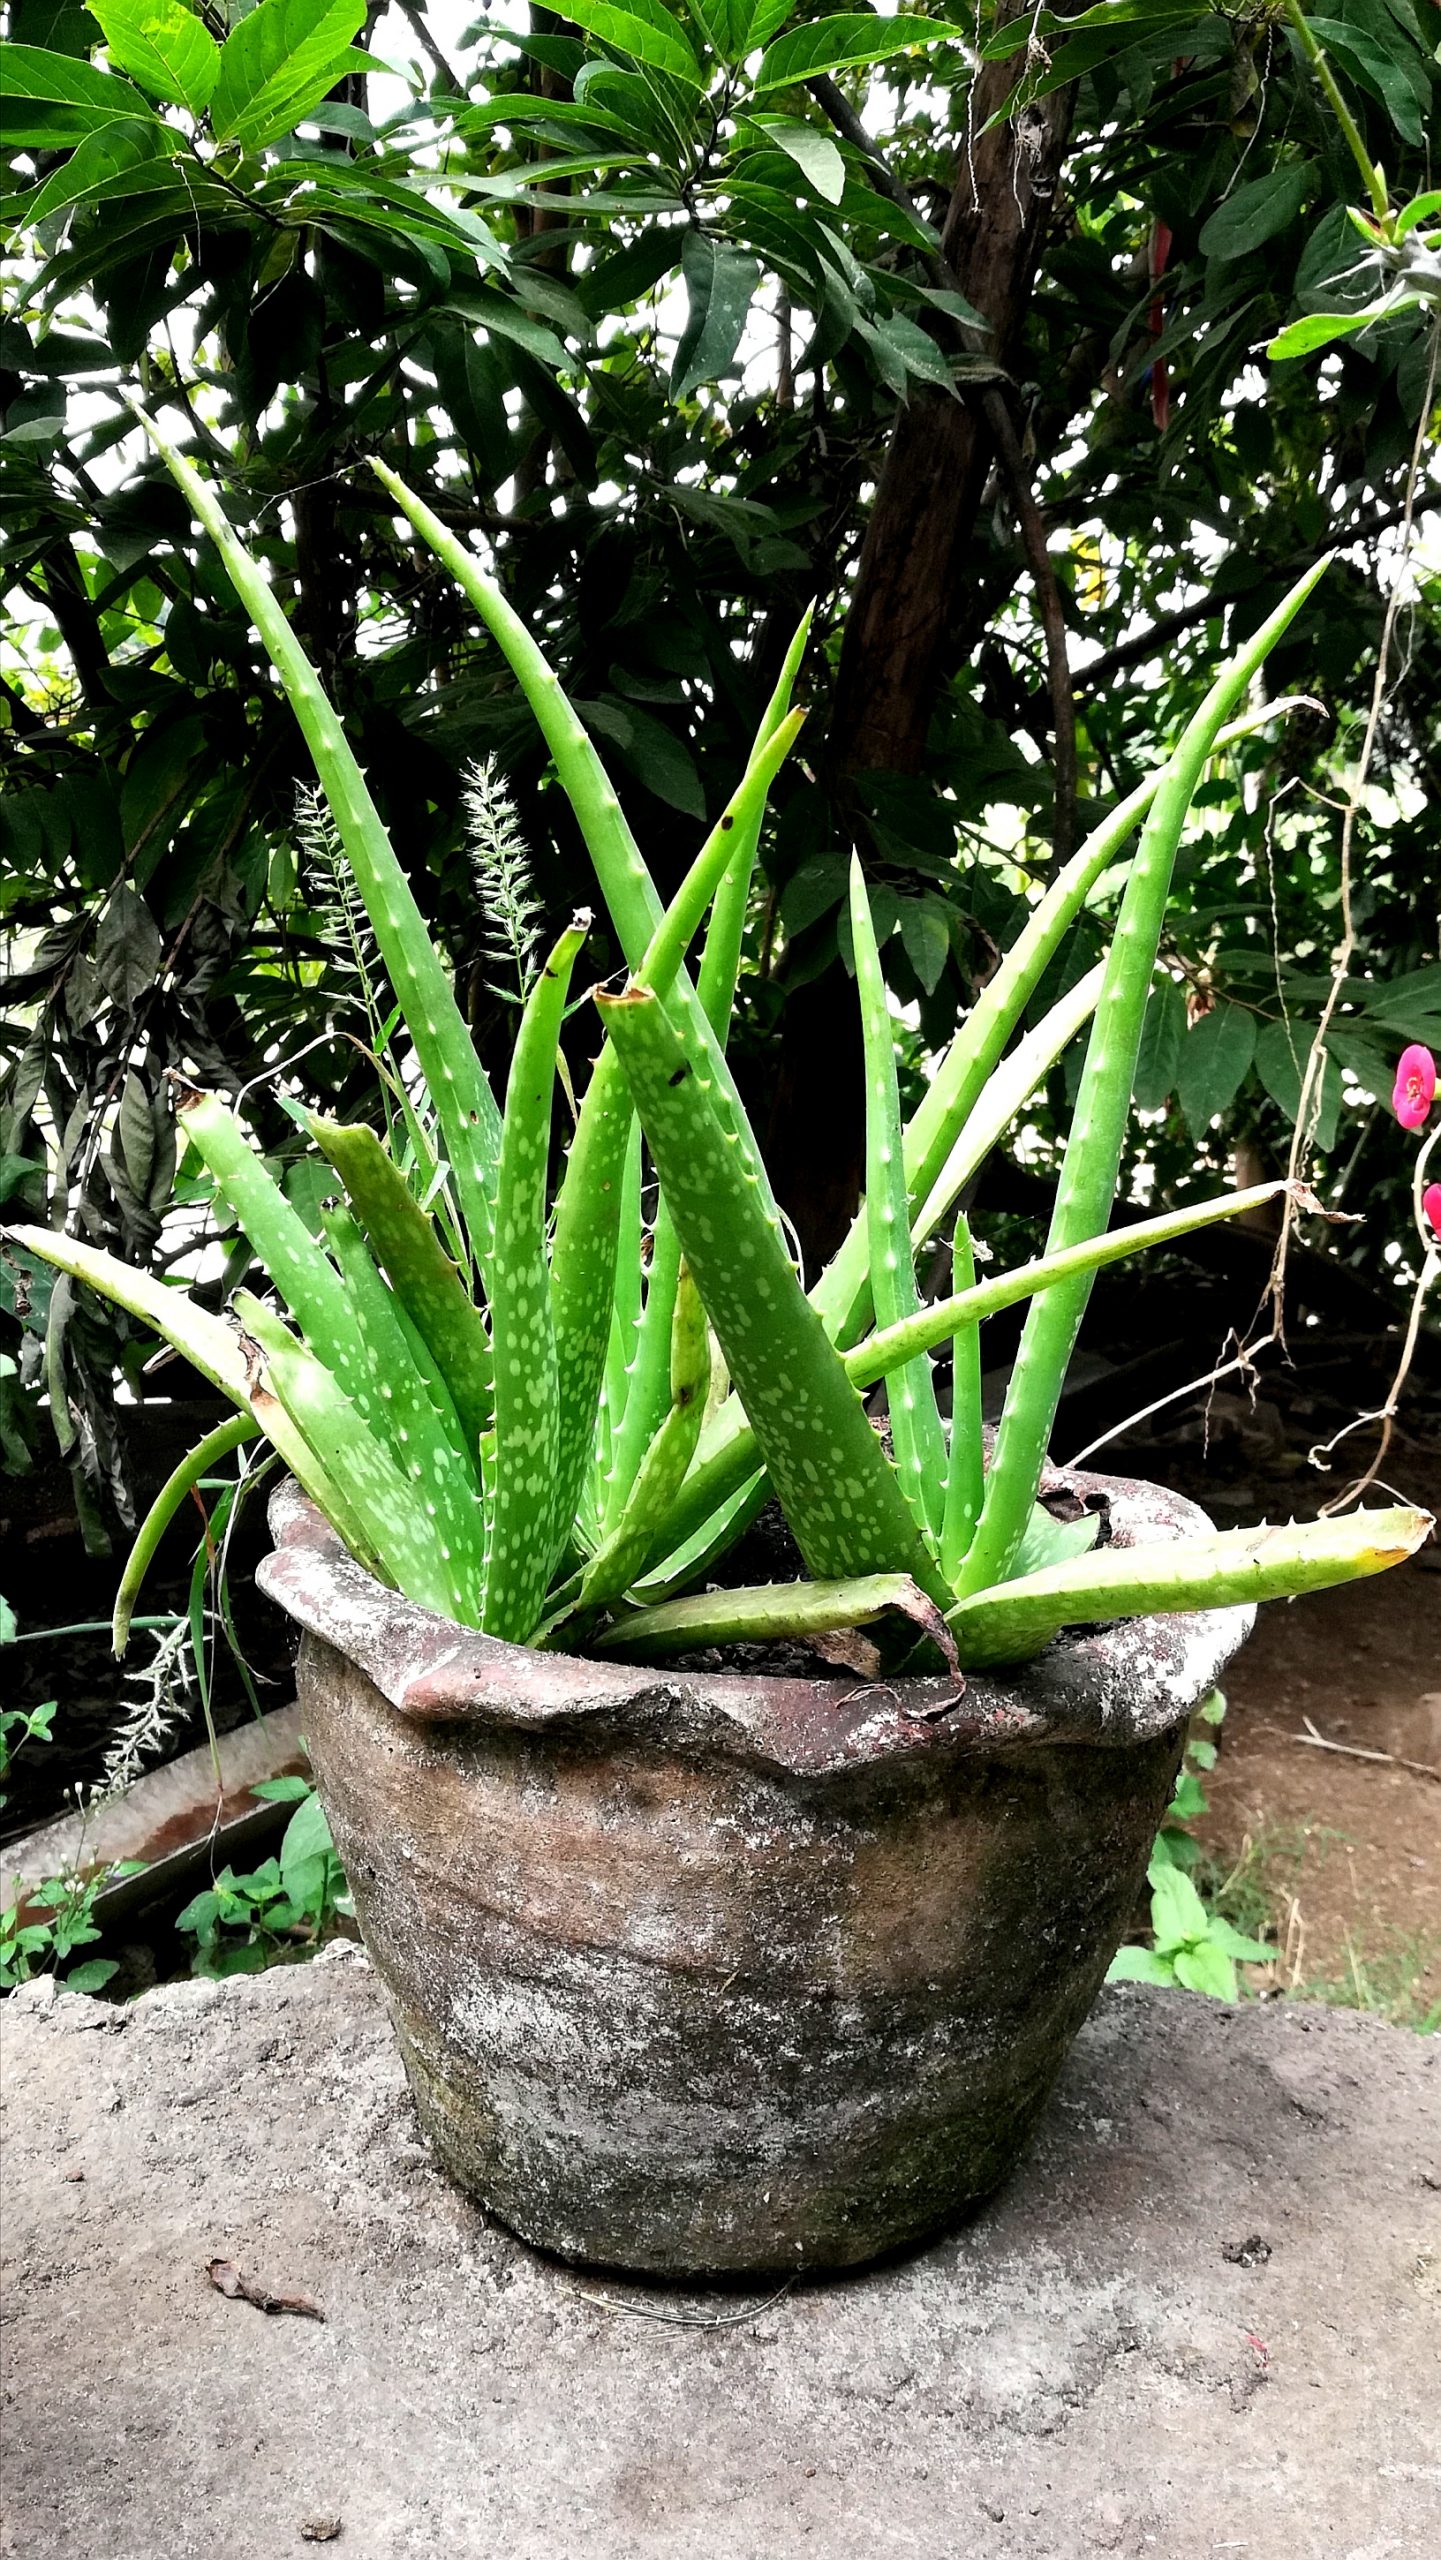 aloe vera plant in a pot